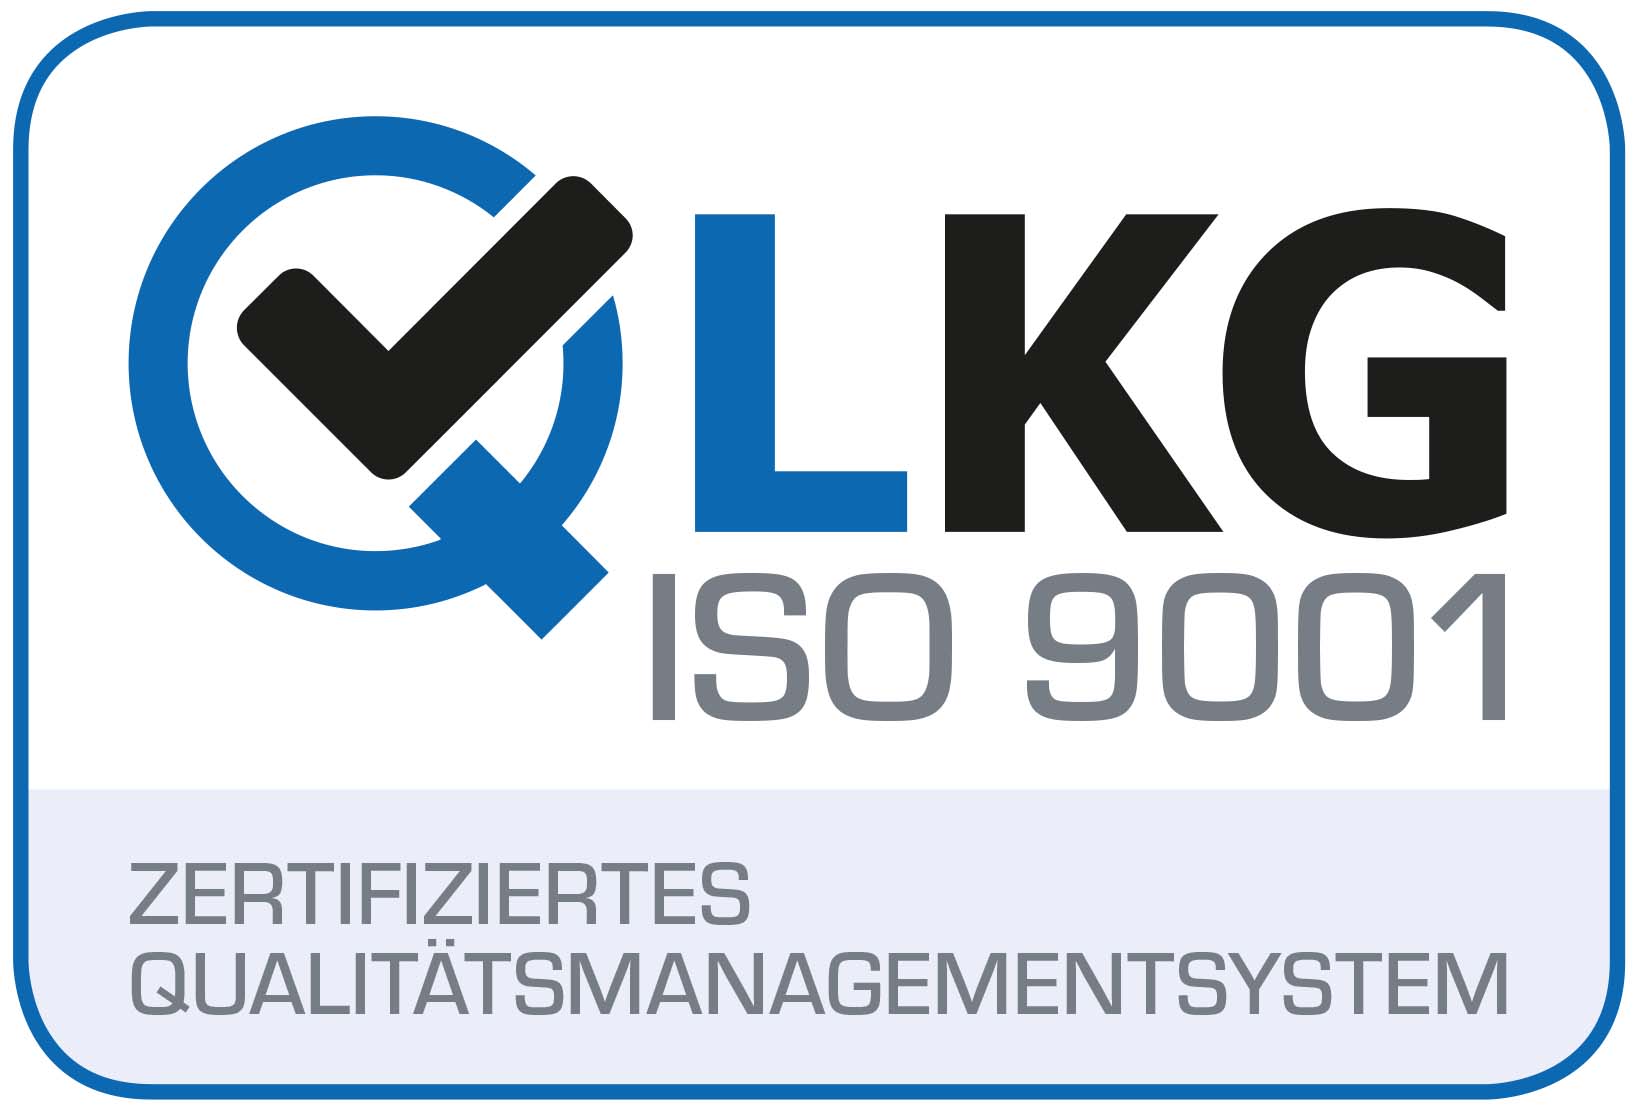 ISO 9001 Zertifiziertes Qualitätsmanagement